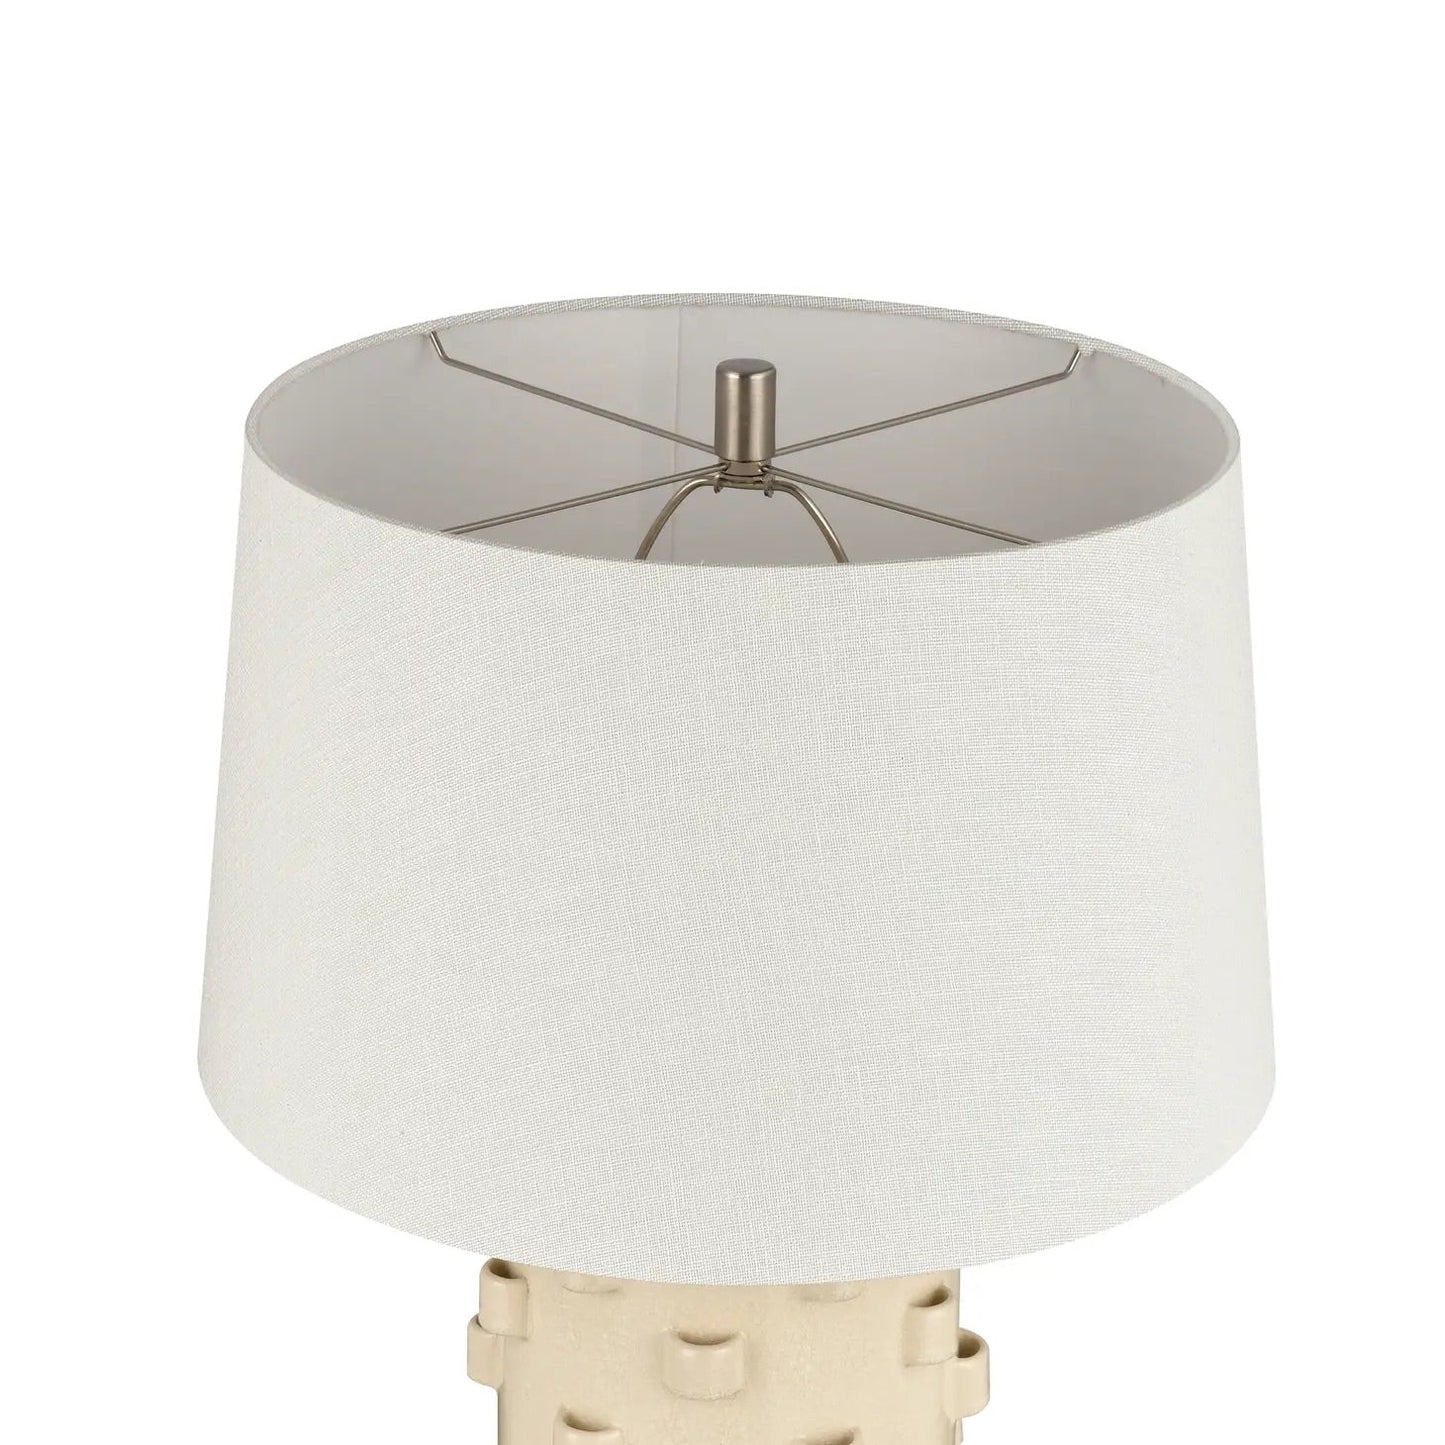 Hatcher 30" Ceramic Table Lamp White Cream Textured Coastal